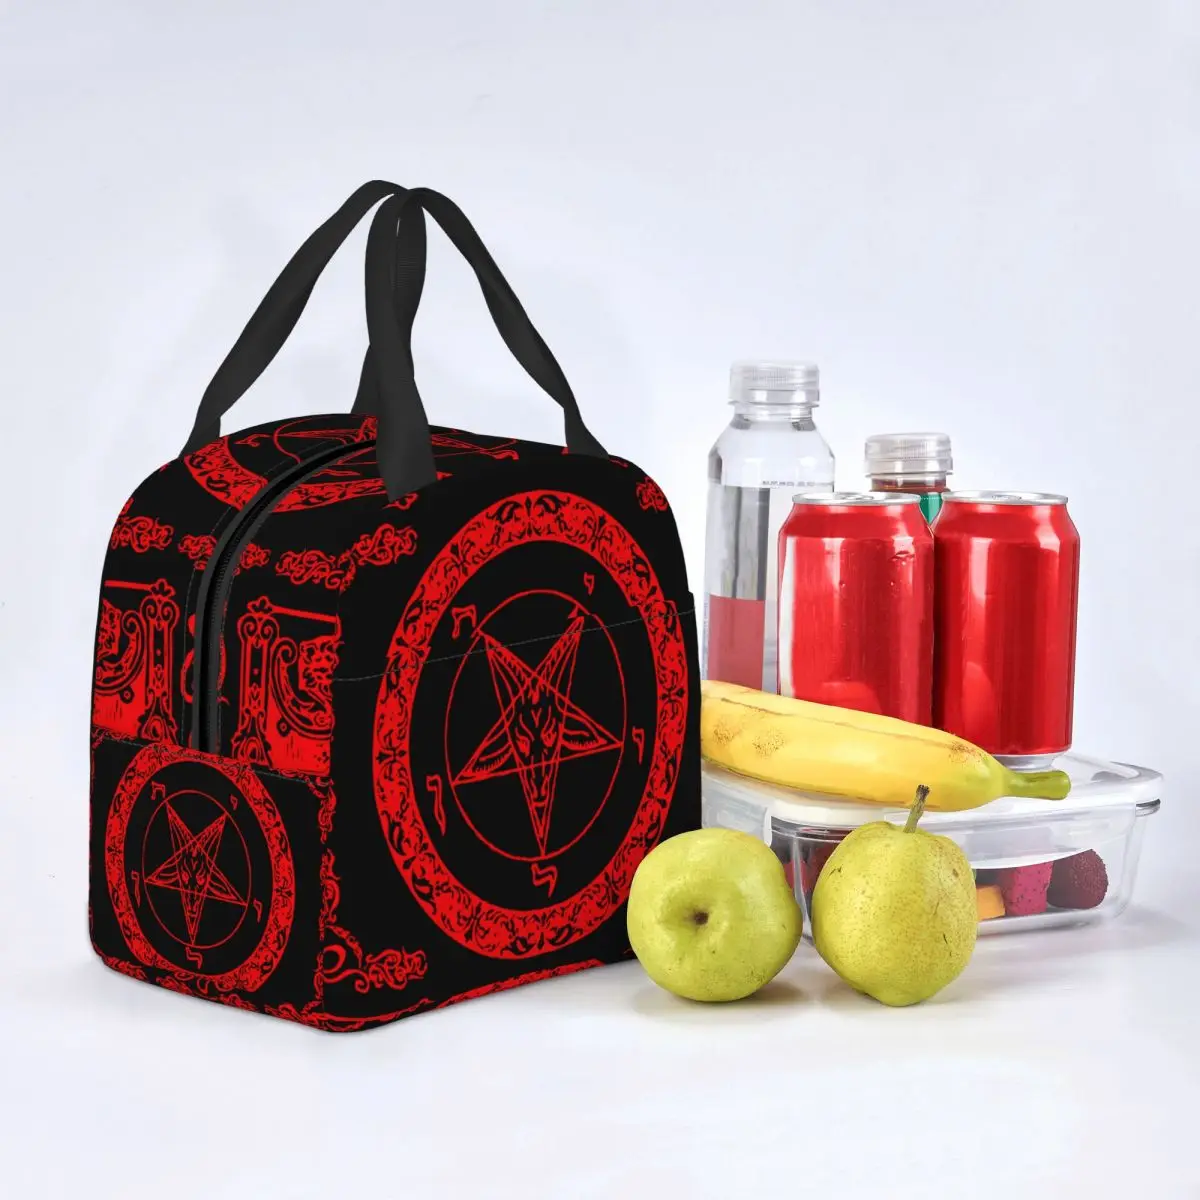 Lunch Bag for Men Women The Sabbatic Goat Baphomet Thermal Cooler Bags Portable Picnic Satan Devil Tarot Occult Tote Food Bag